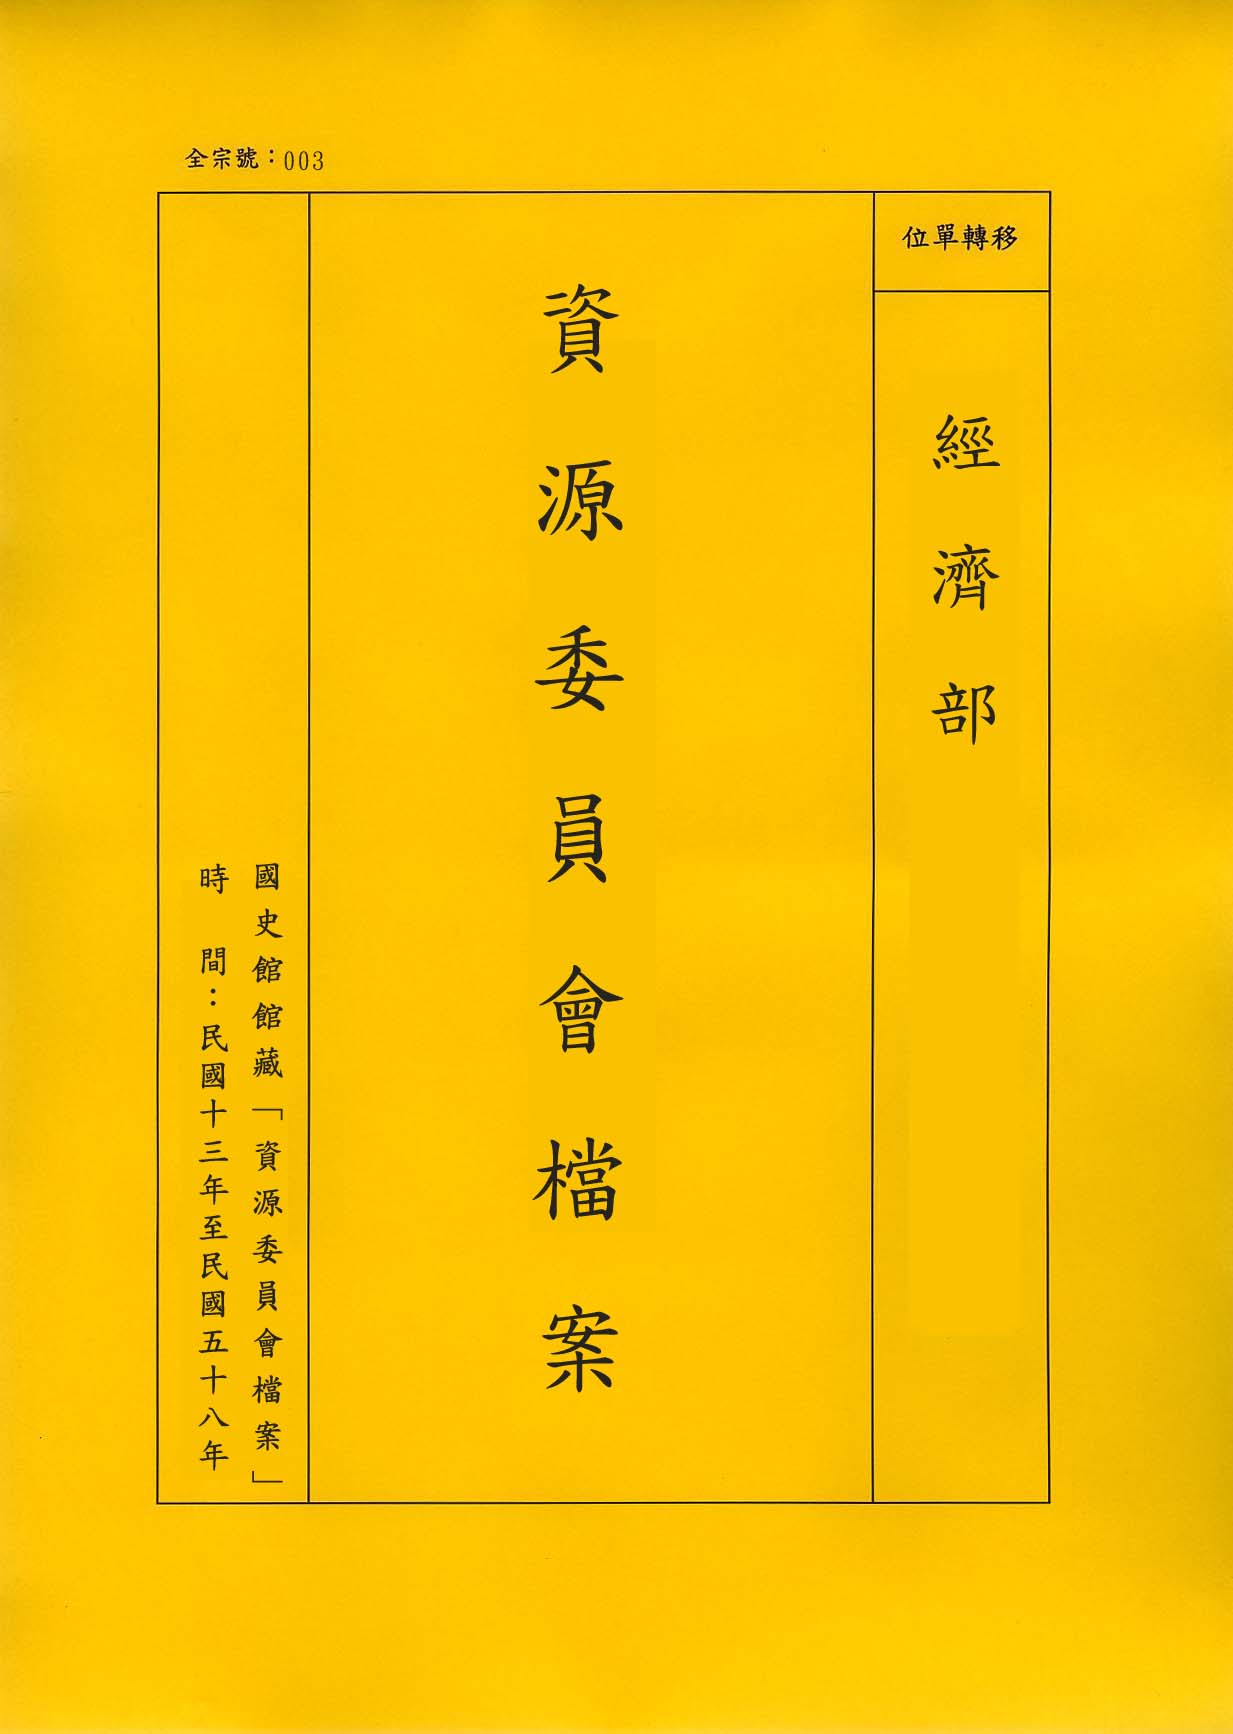 卷名:紡織工廠調查表─上海(七)(003-010306-0227)